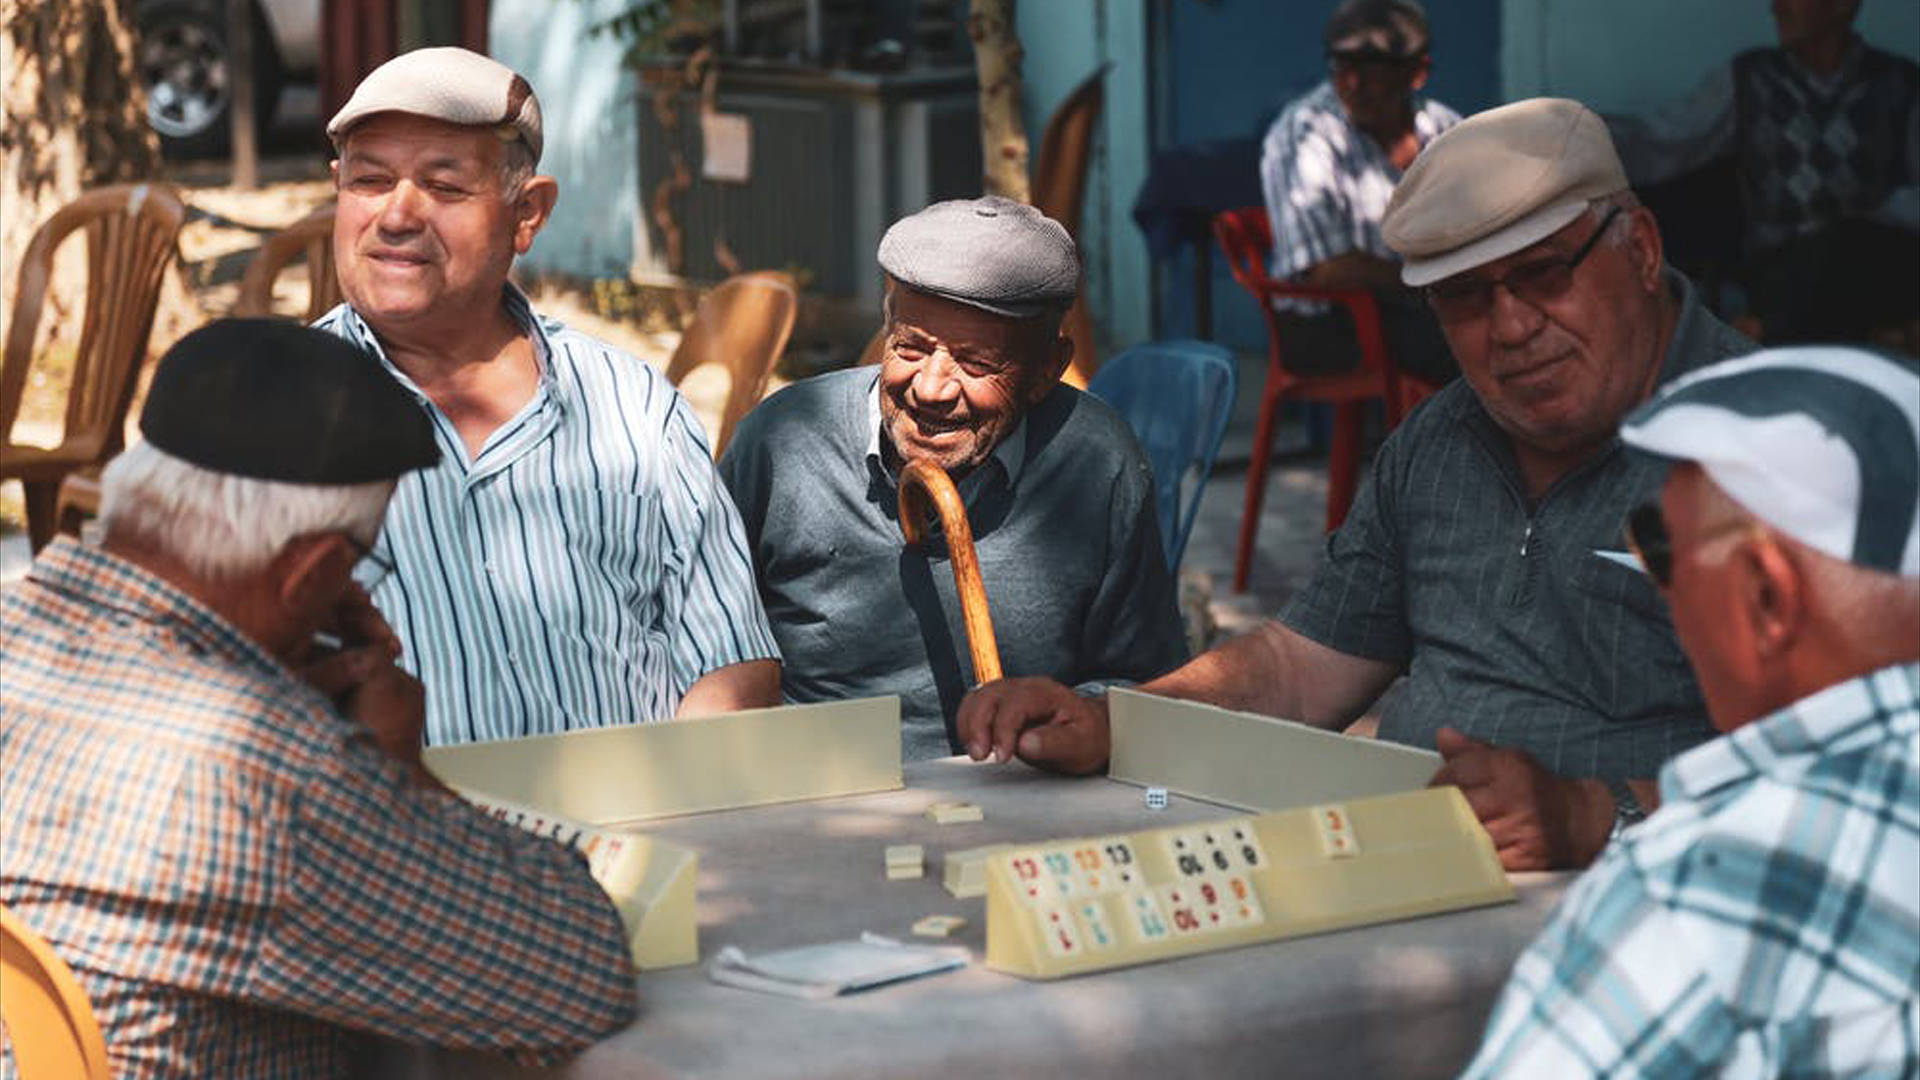 Fotografía que muestra a varias personas mayores jugando juntas en un bar.